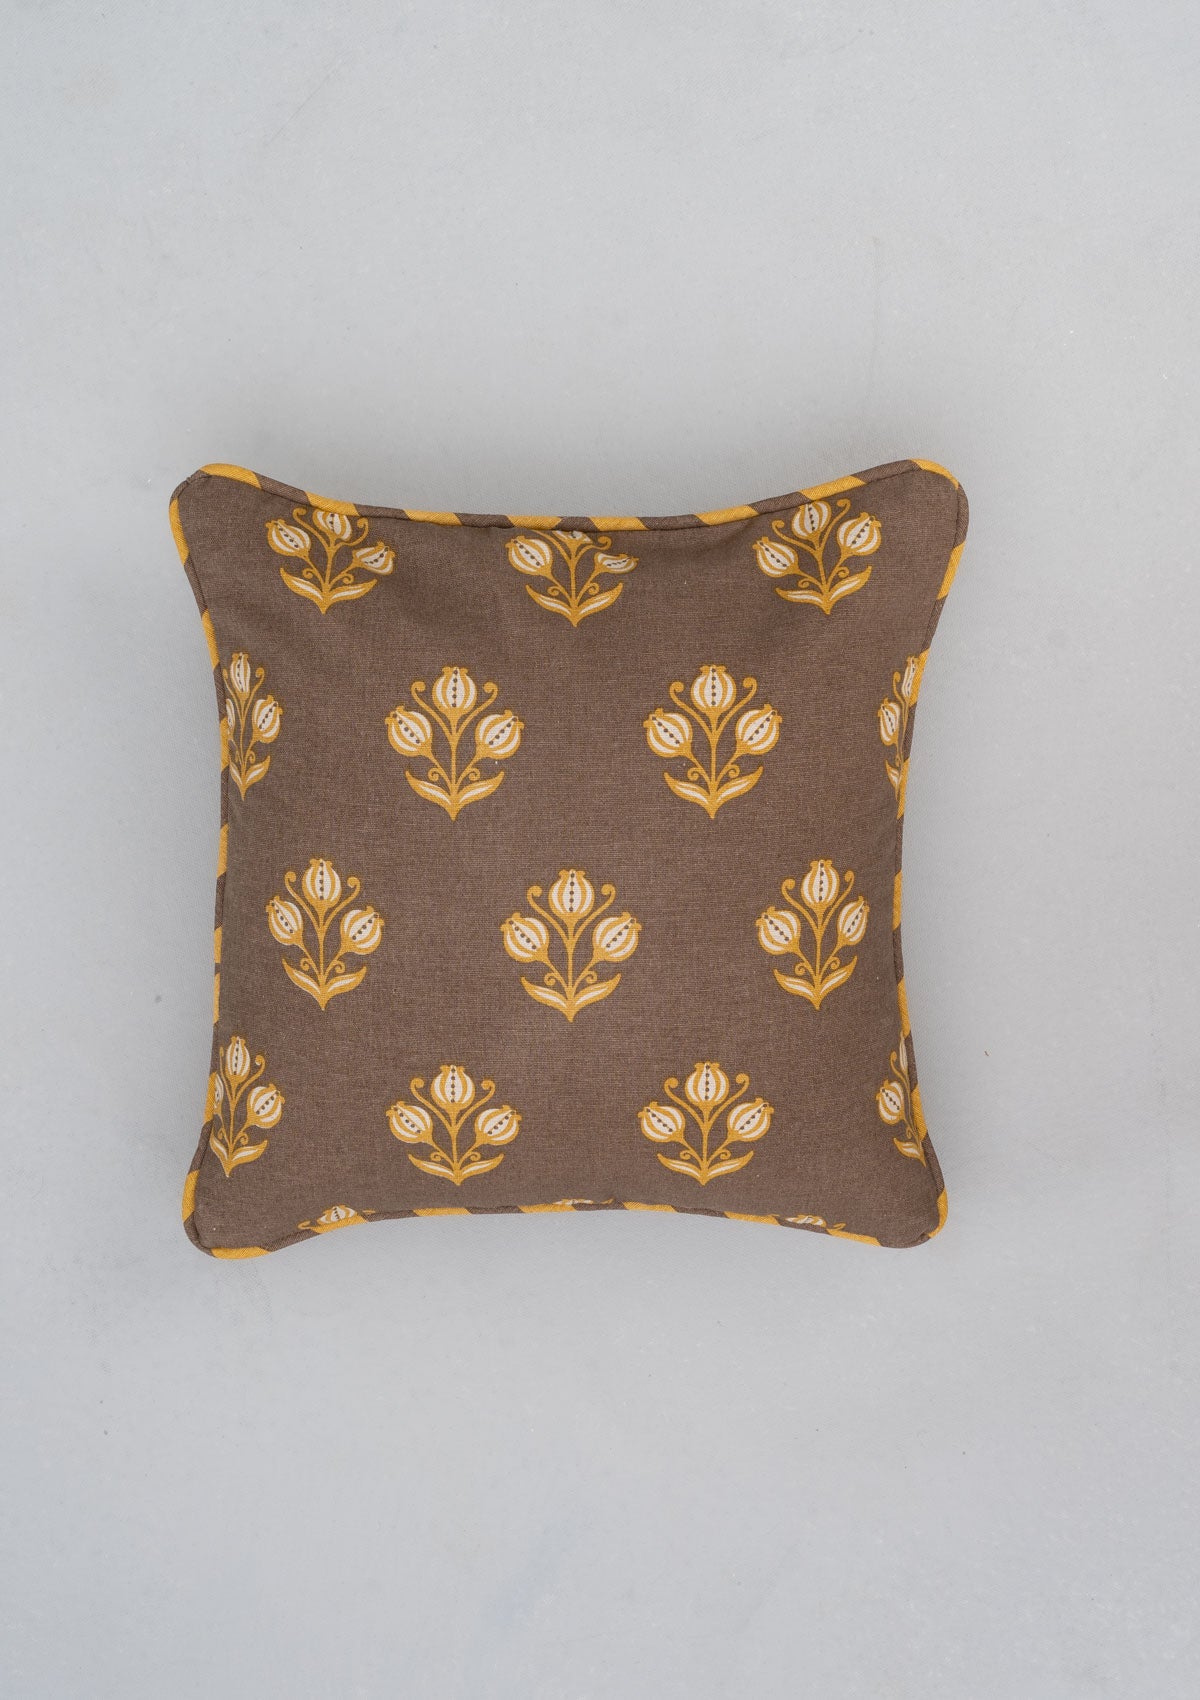 Cinnamon Printed Cotton Cushion Cover - Brown